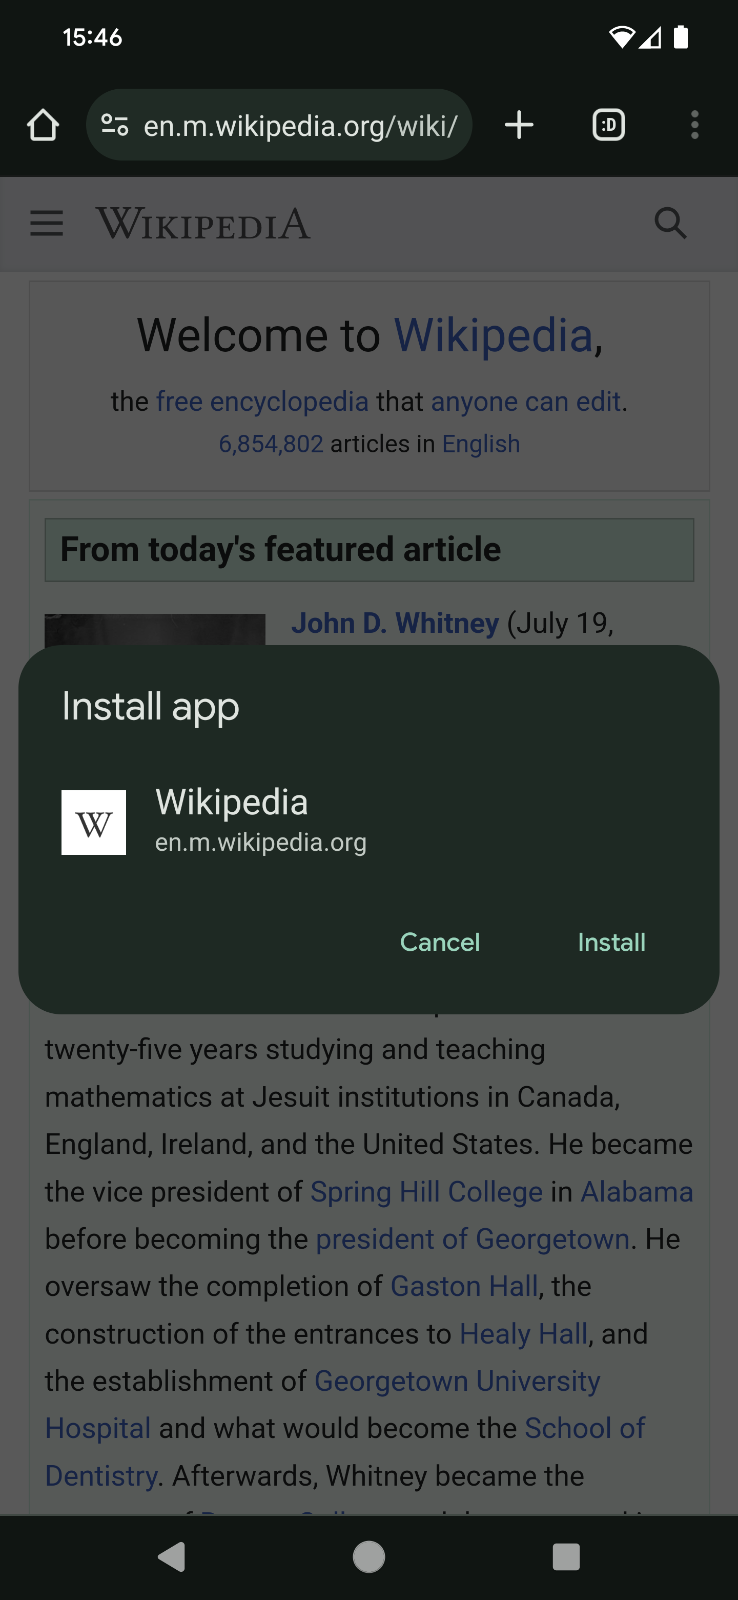 Caixa de diálogo para instalar o app no site da Wikipédia.